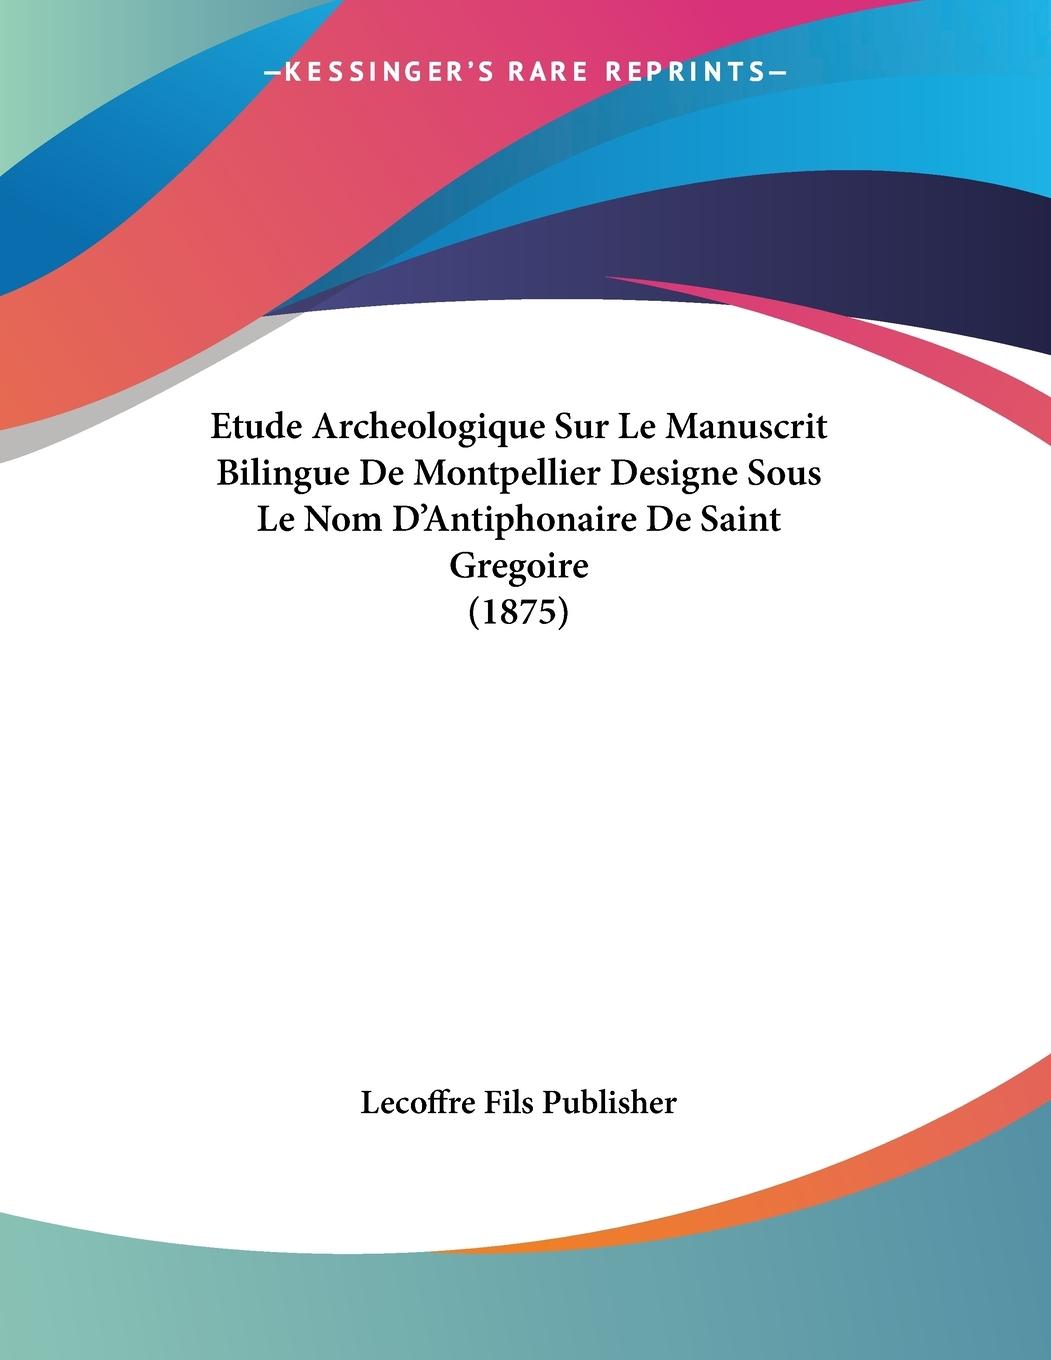 Etude Archeologique Sur Le Manuscrit Bilingue De Montpellier Designe Sous Le Nom D Antiphonaire De Saint Gregoire (1875) - Lecoffre Fils Publisher